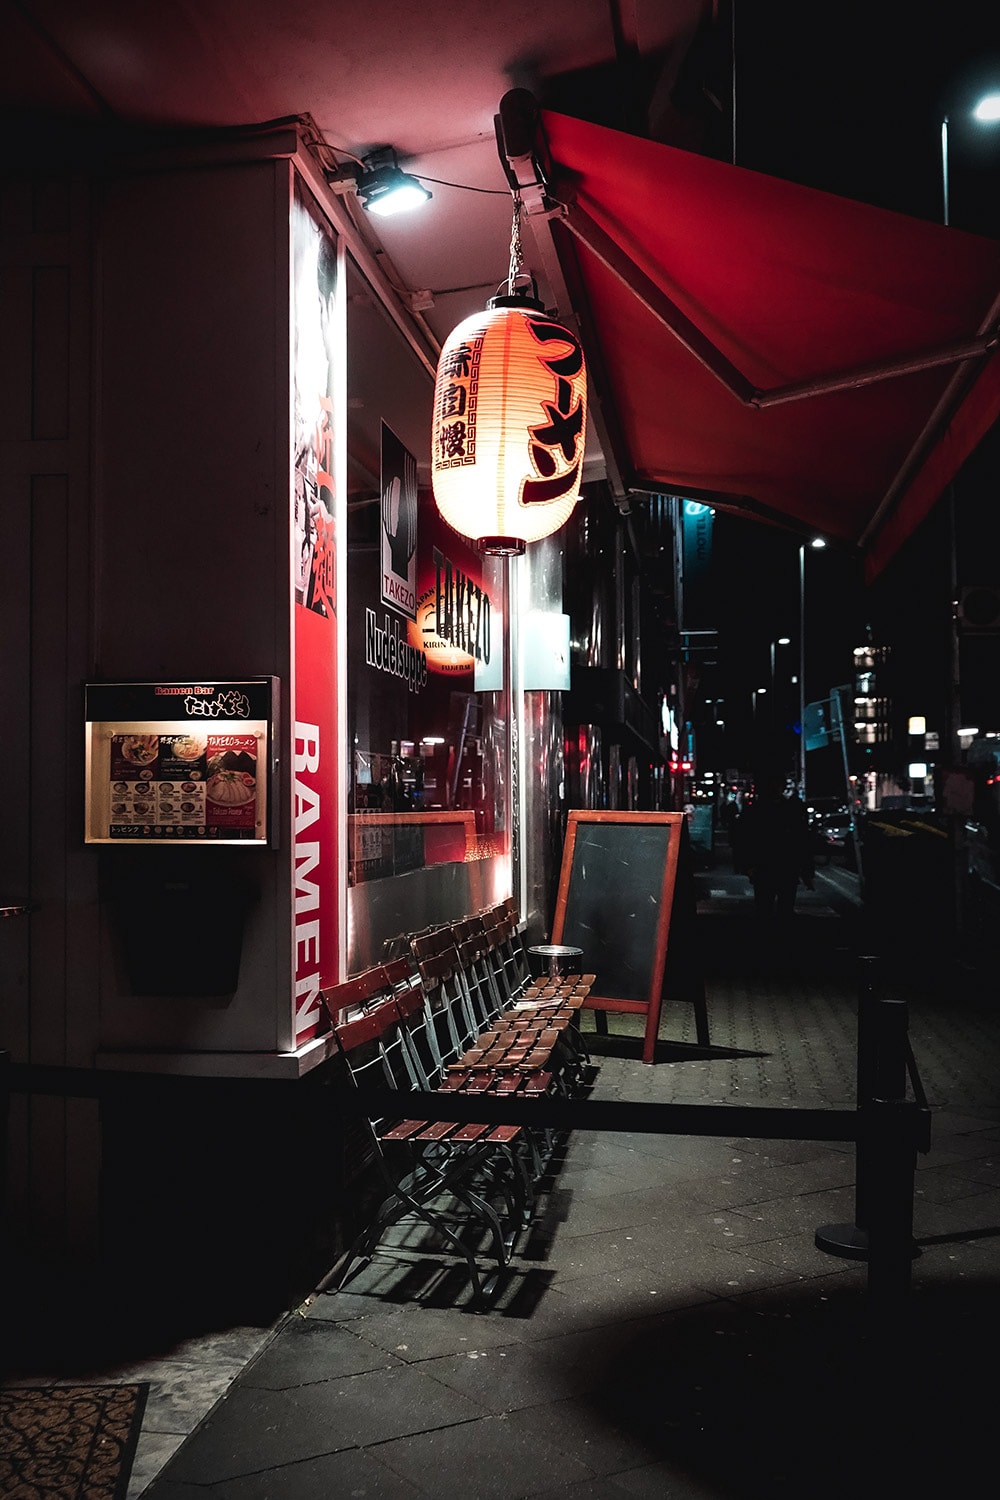 Die Stadt schläft nie. Kulinarik ist von früh bis spät verfügbar. Oftmals auch geprägt durch die lebhafte, japanische Community in Düsseldorf.